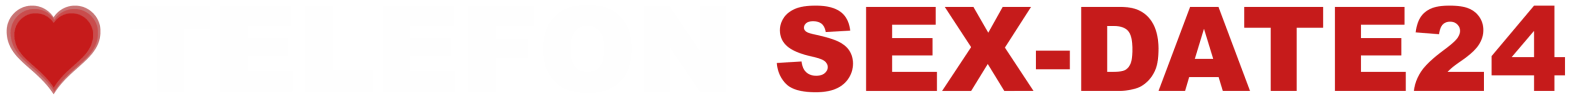 Telefon-Sexdate-24 Logo